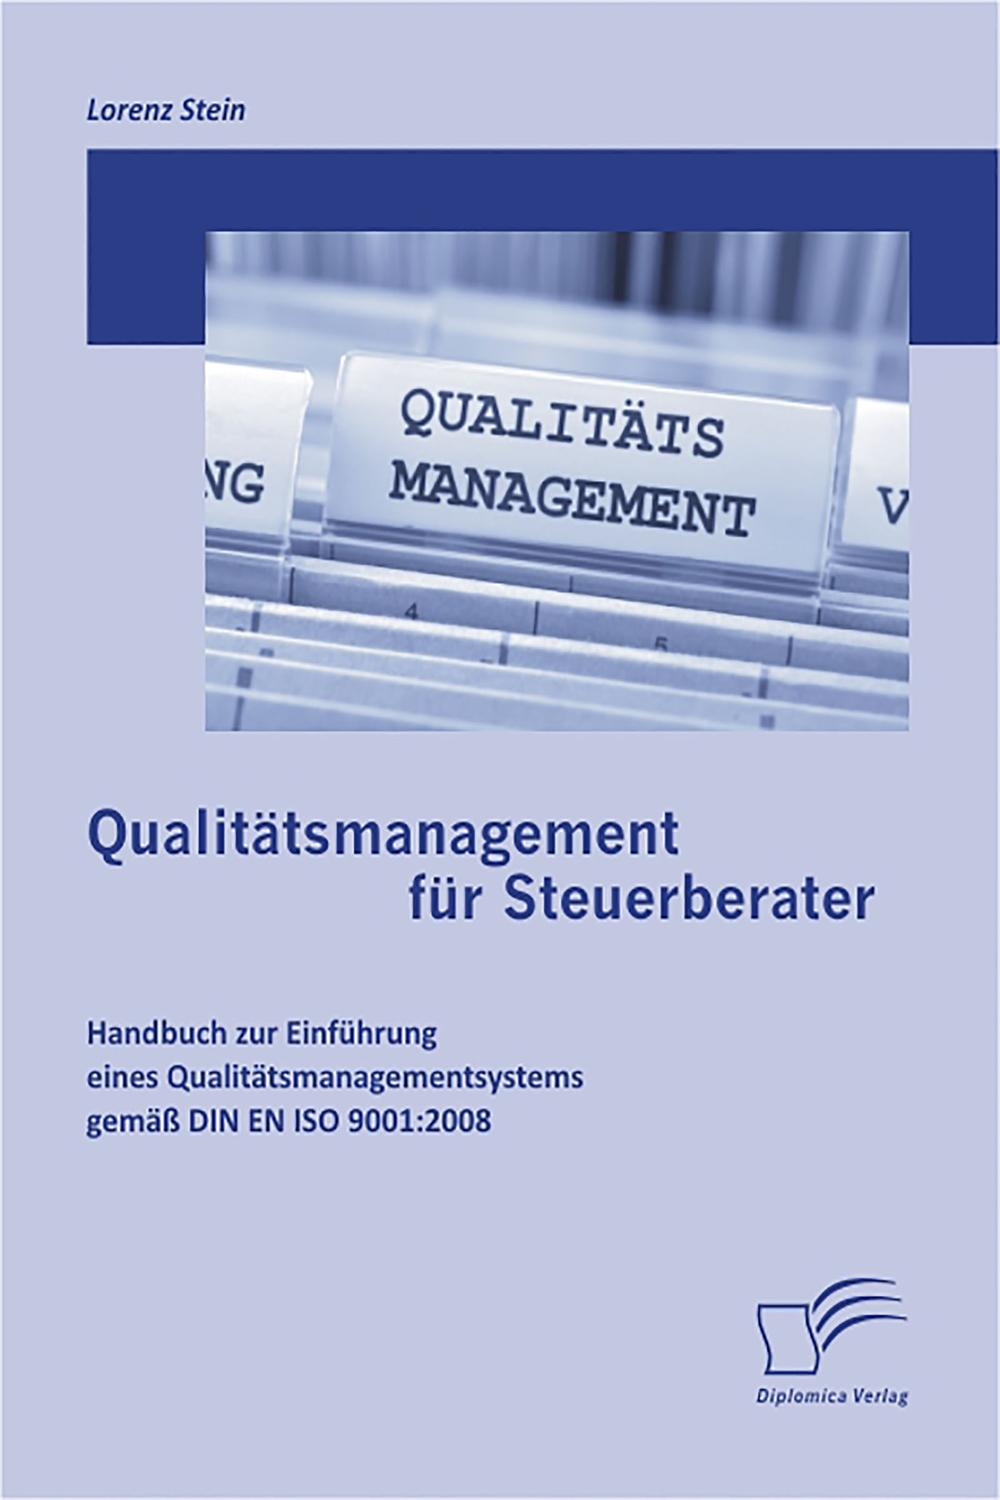 Qualitätsmanagement für Steuerberater: Handbuch zur Einführung eines Qualitätsmanagementsystems gemäß DIN EN ISO 9001:2008 - Lorenz Stein